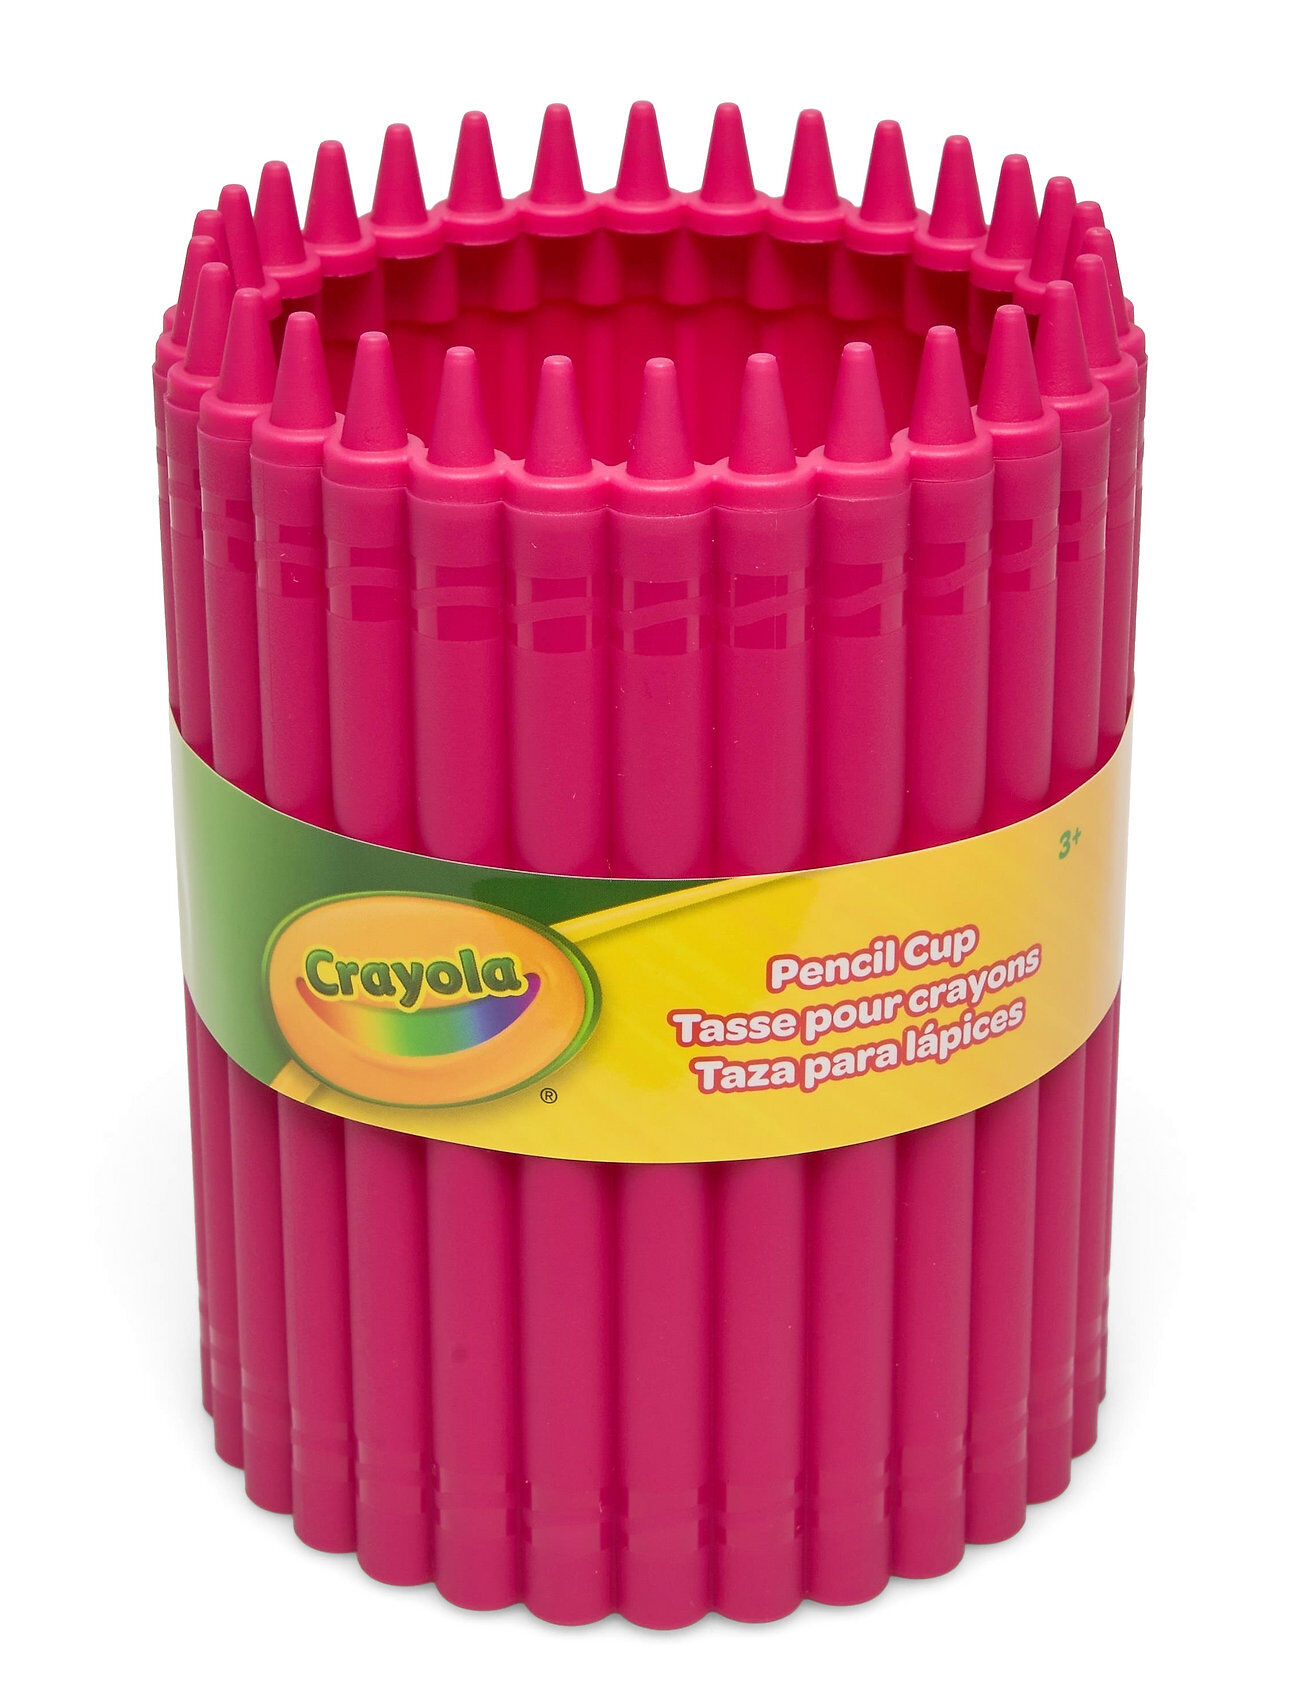 Crayola Pencil Cup Home Kids Decor Storage Rosa CRAYOLA